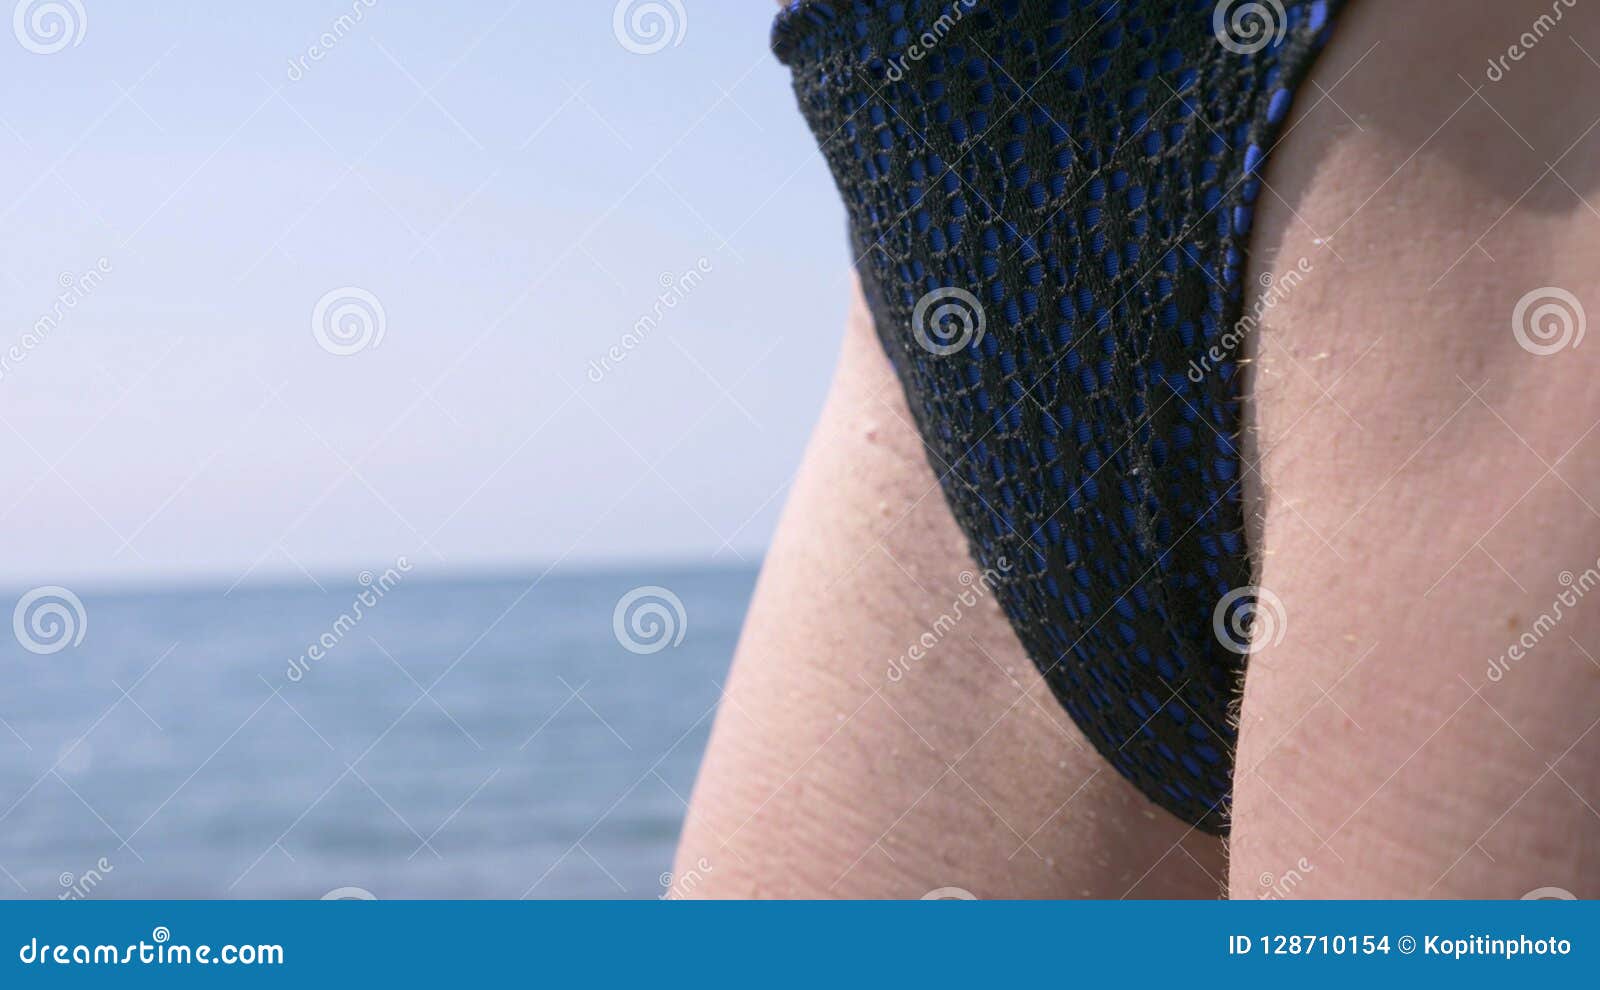 Плоскодонка с кустиком на лобке голышом отдыхает на пляже и демонстрирует худые ляжки